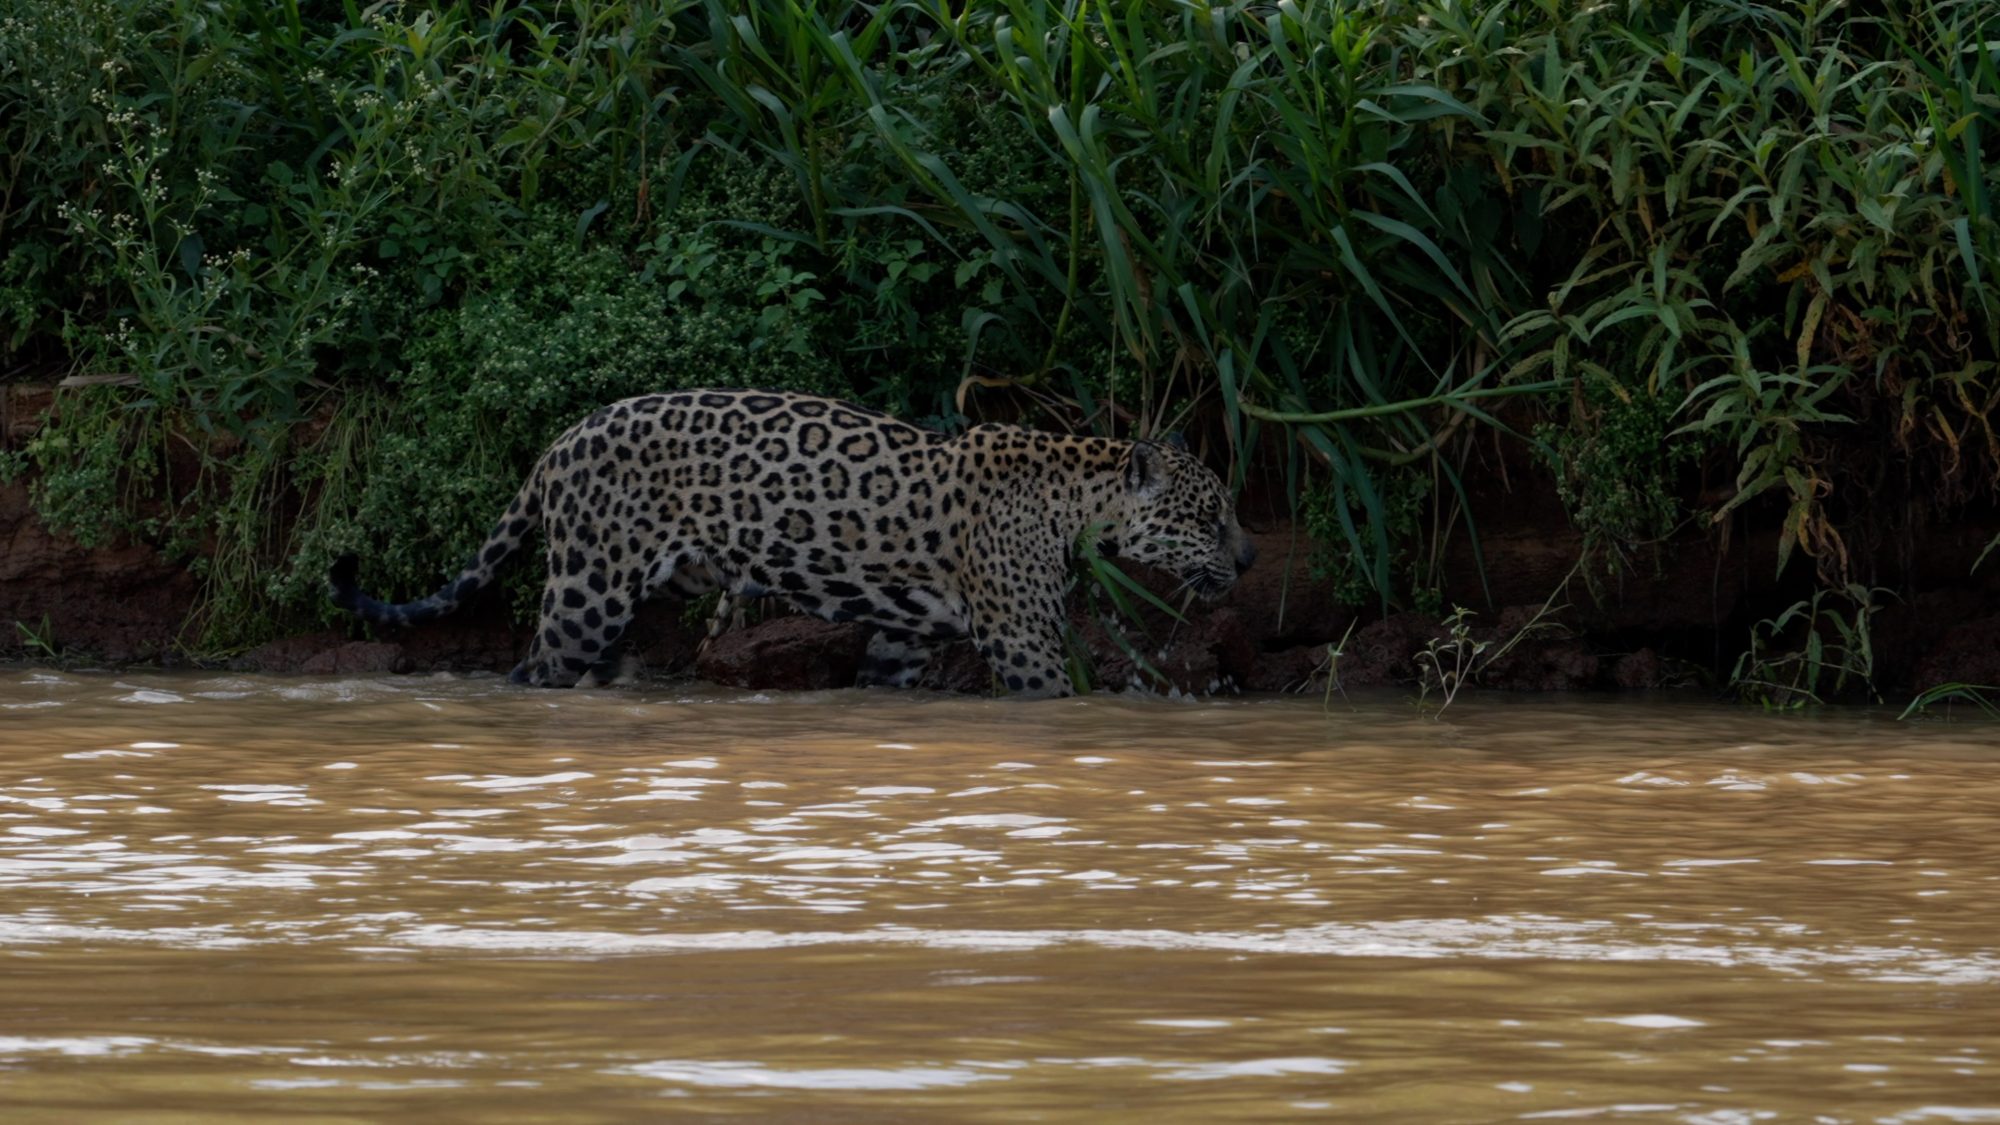 Jaguar along the river bank – Pantanal, Brazil 2022